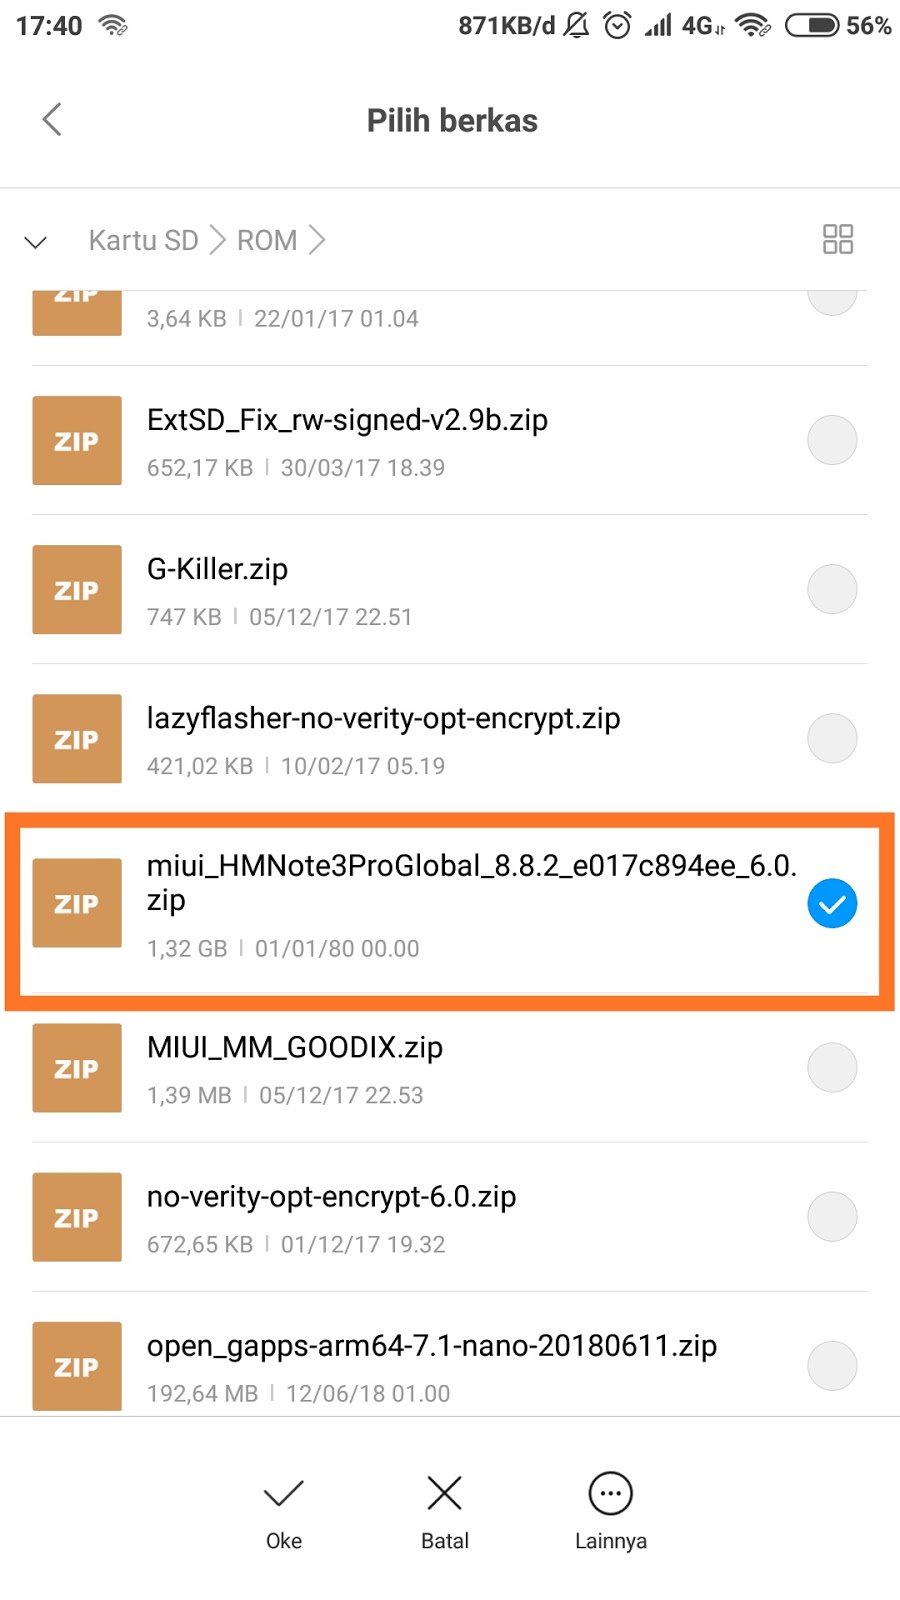 Download MIUI 10 Global Stable ROM (Link Update) - BOOTLOOP.ID